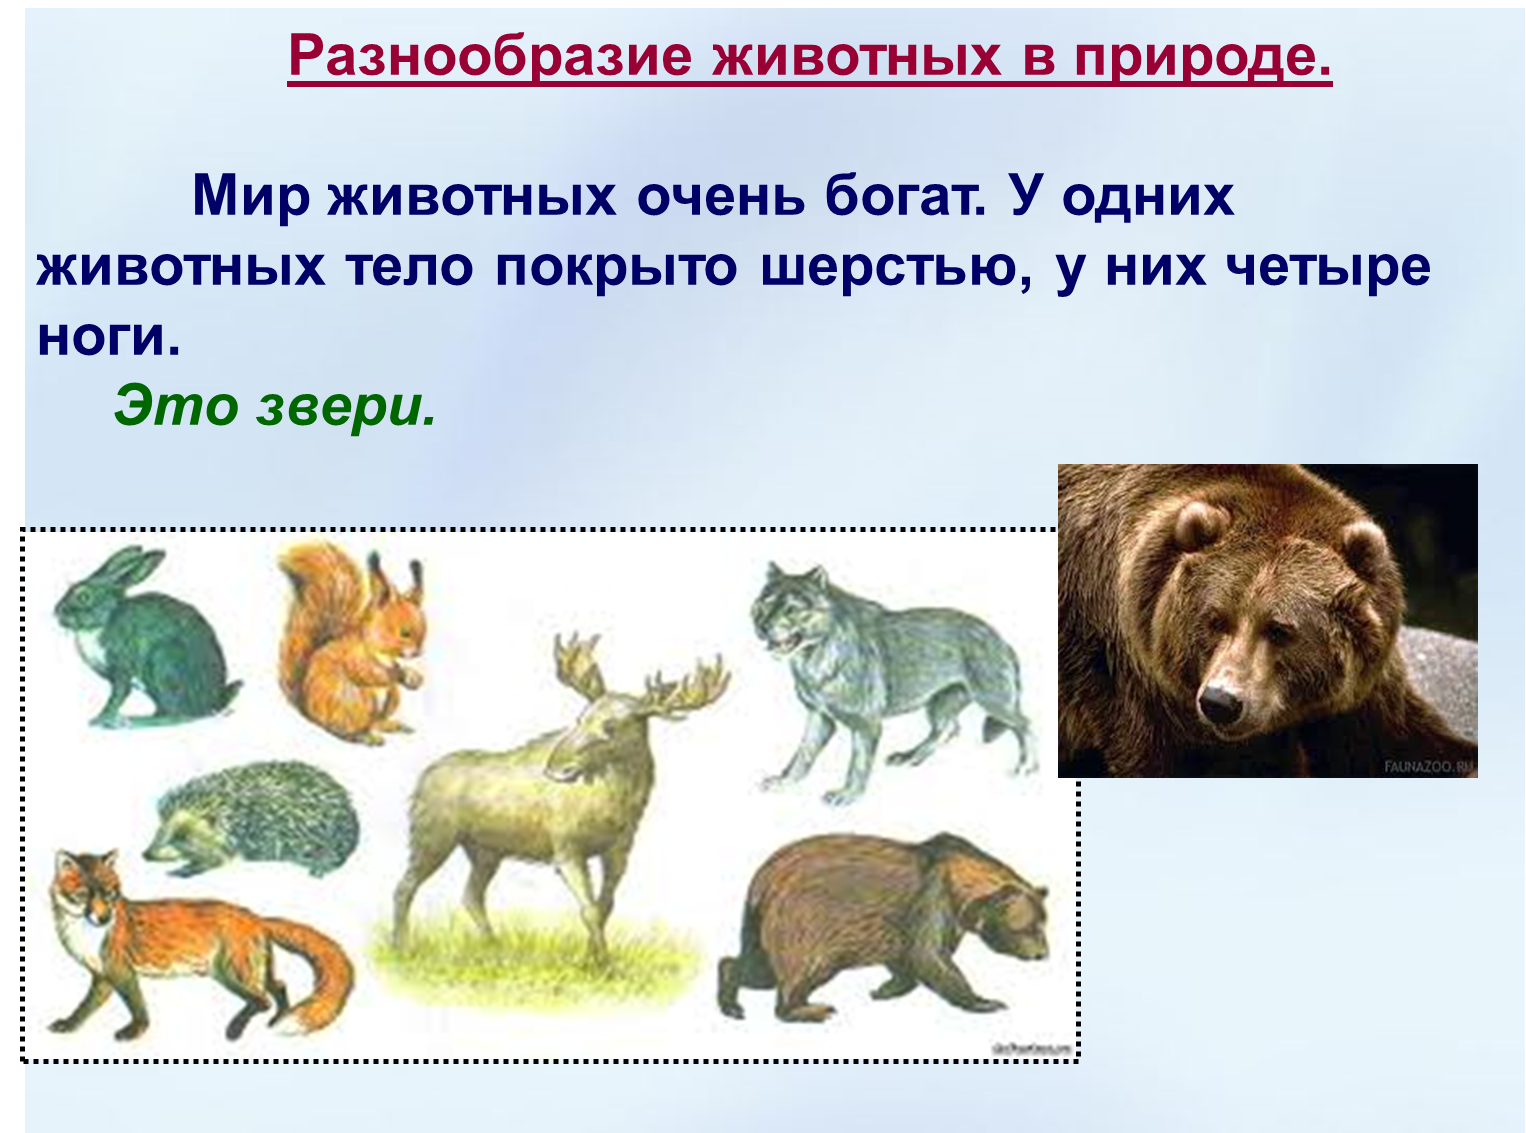 Как объяснить высокое разнообразие животных. Разнообразие животных. Многообразие зверей. Разнообразный мир животных.